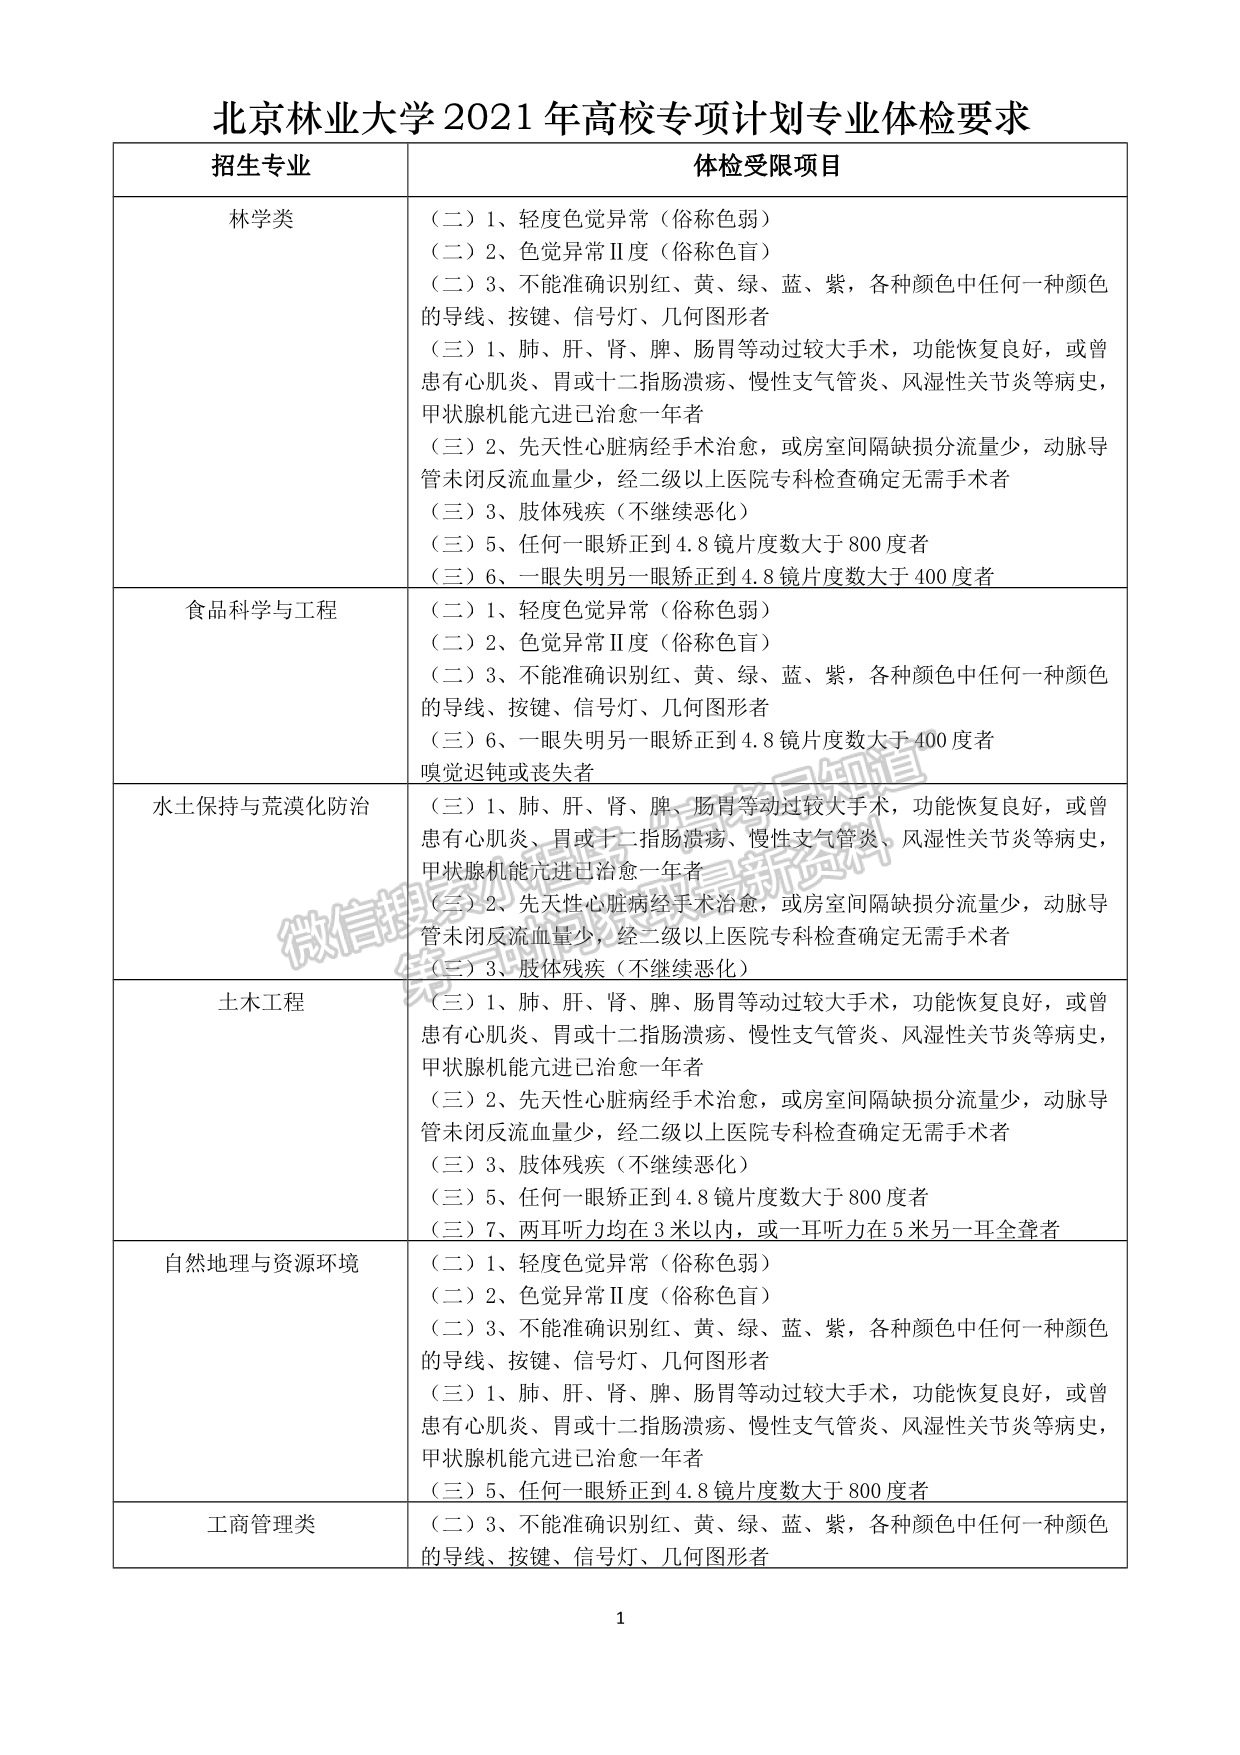 北京林业大学2021年高校专项计划招生简章